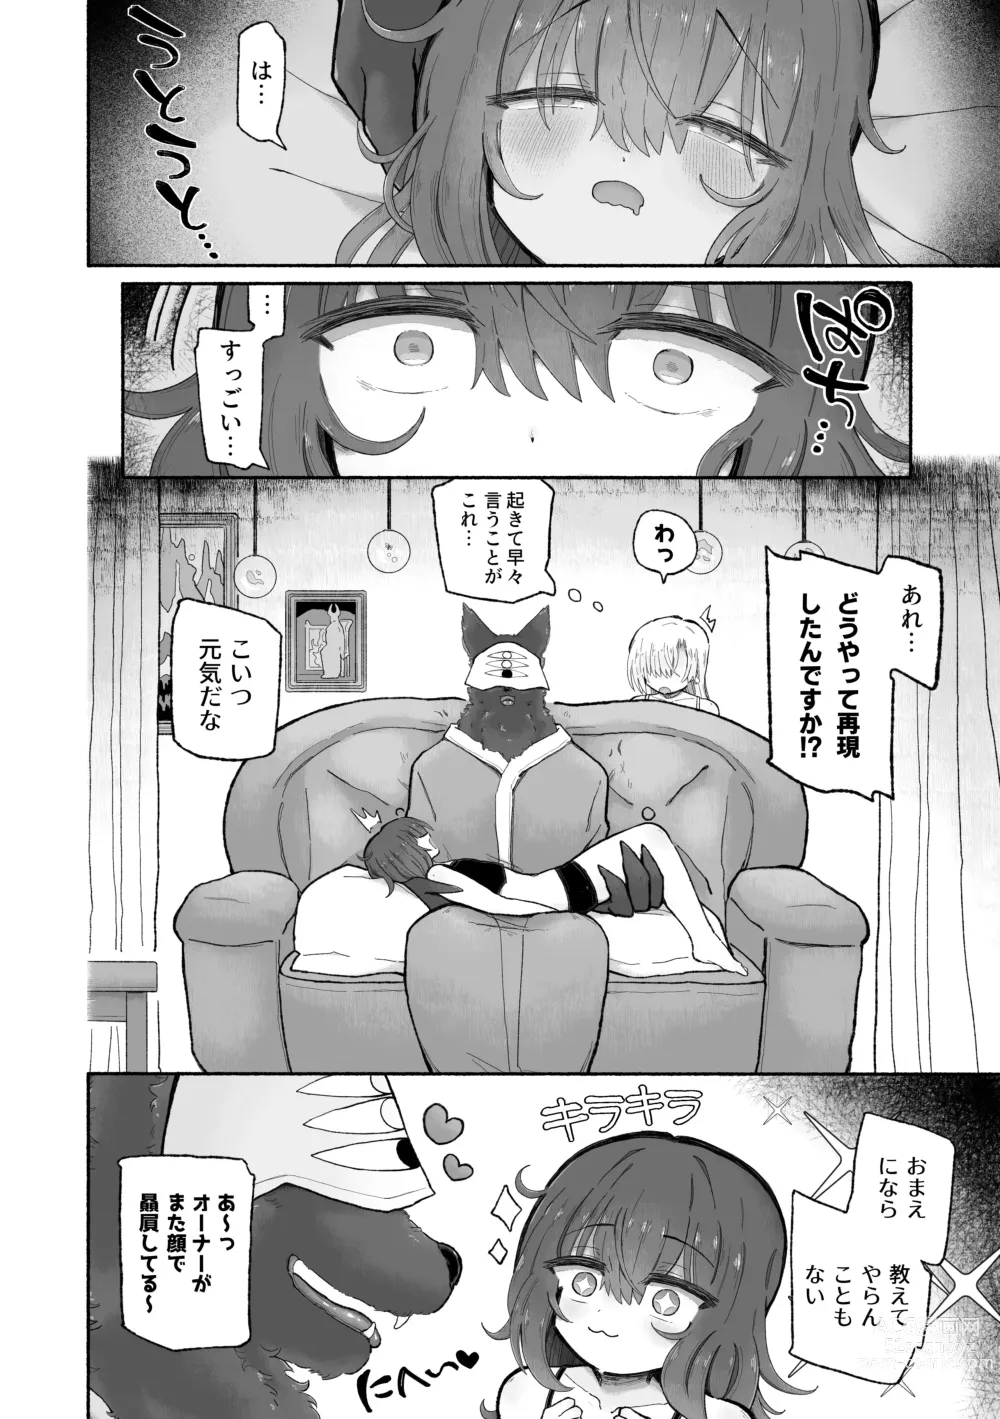 Page 50 of doujinshi Do hamari chui no kyosei danjon! 〜Mugen shasei no kairaku jigoku e yokoso〜